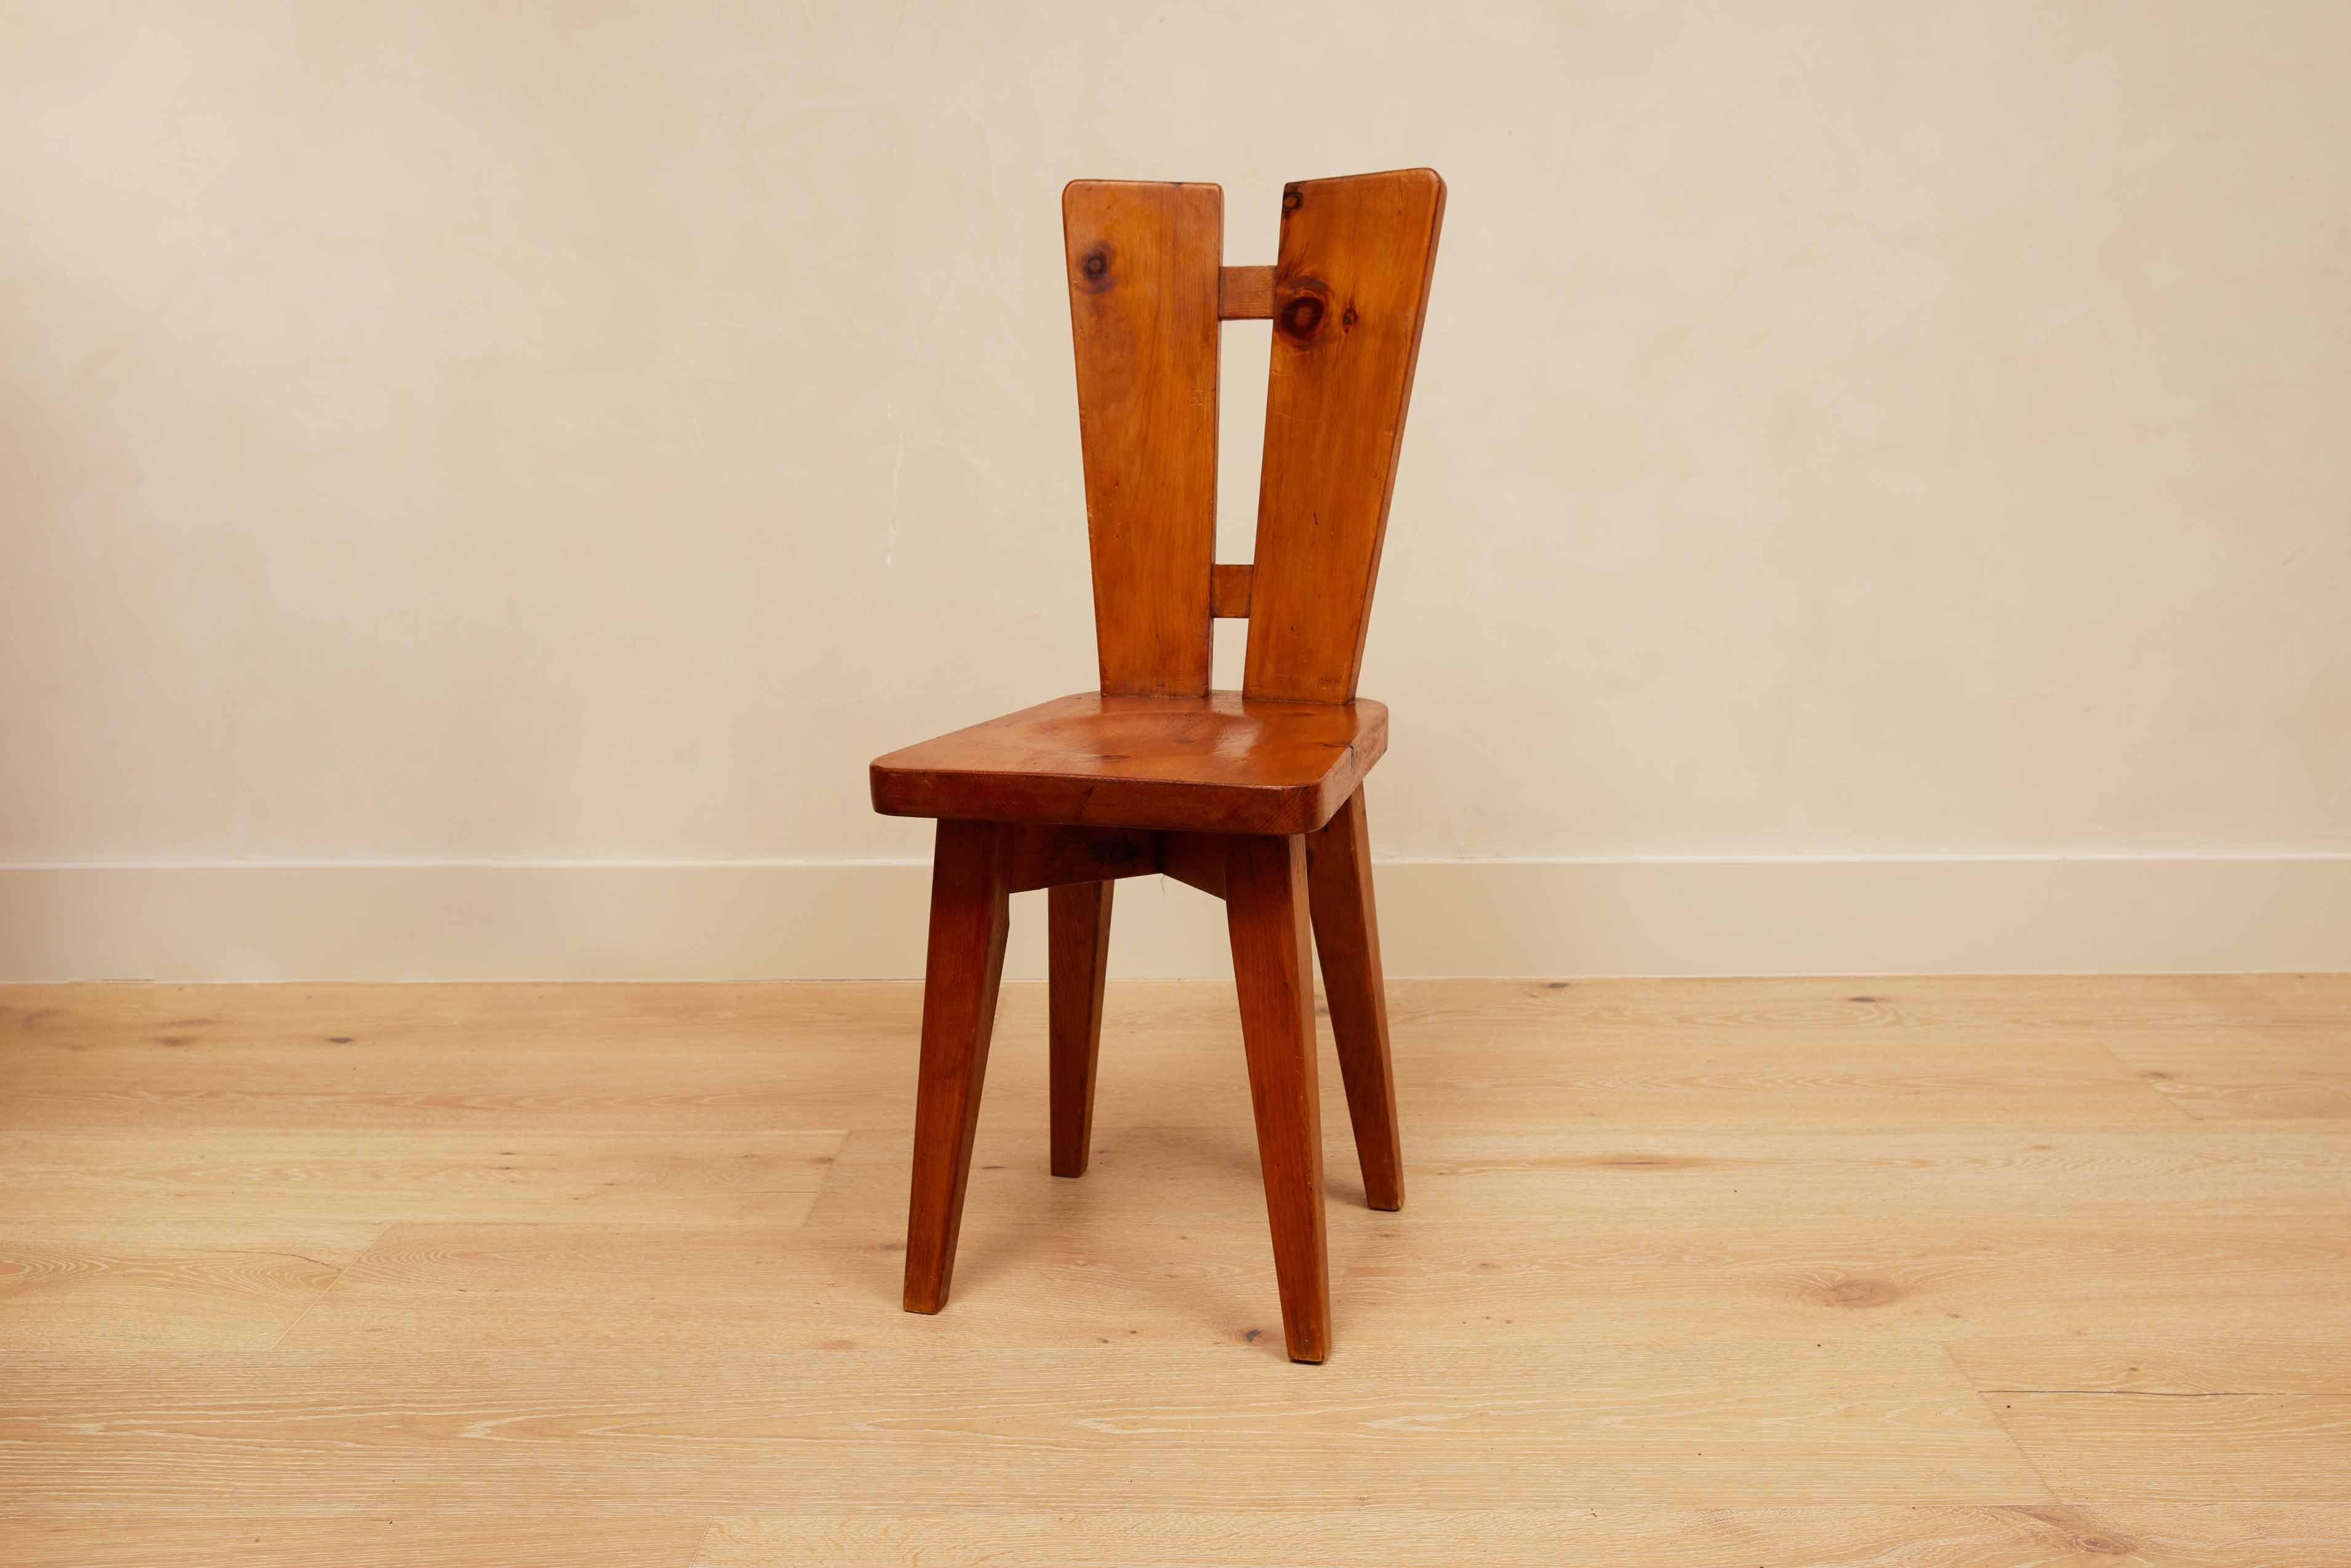 Christian Durupt, chaises de salle à manger, pin, France, années 1960

Veuillez noter qu'une chaise est légèrement plus haute que l'autre. La chaise la plus courte mesure 33